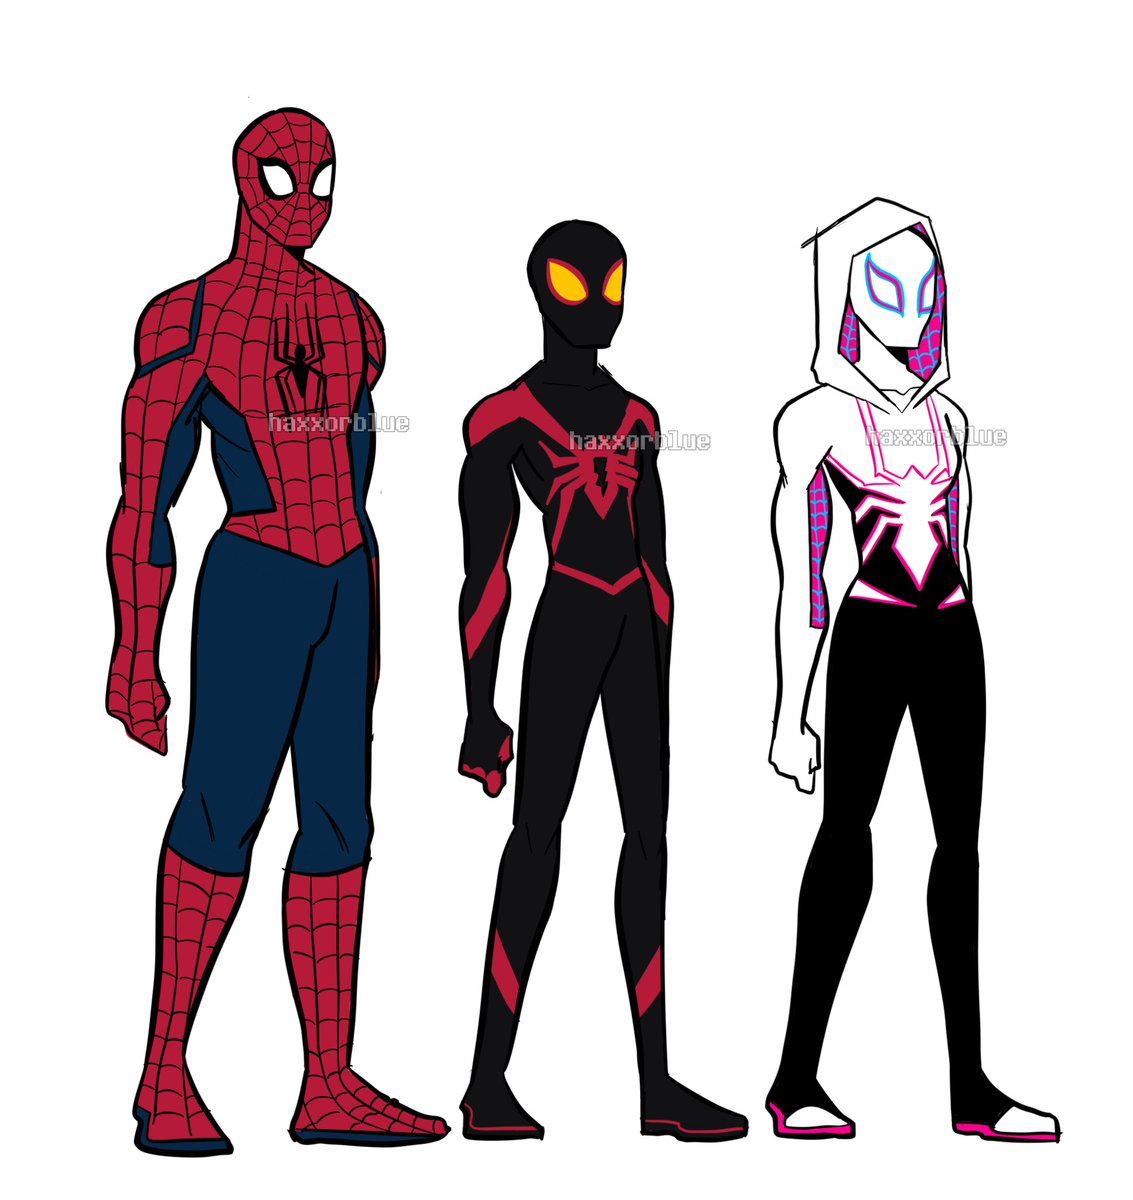 spidey gang suit designs
#spiderman #peterparker #milesmorales #gwenstacy